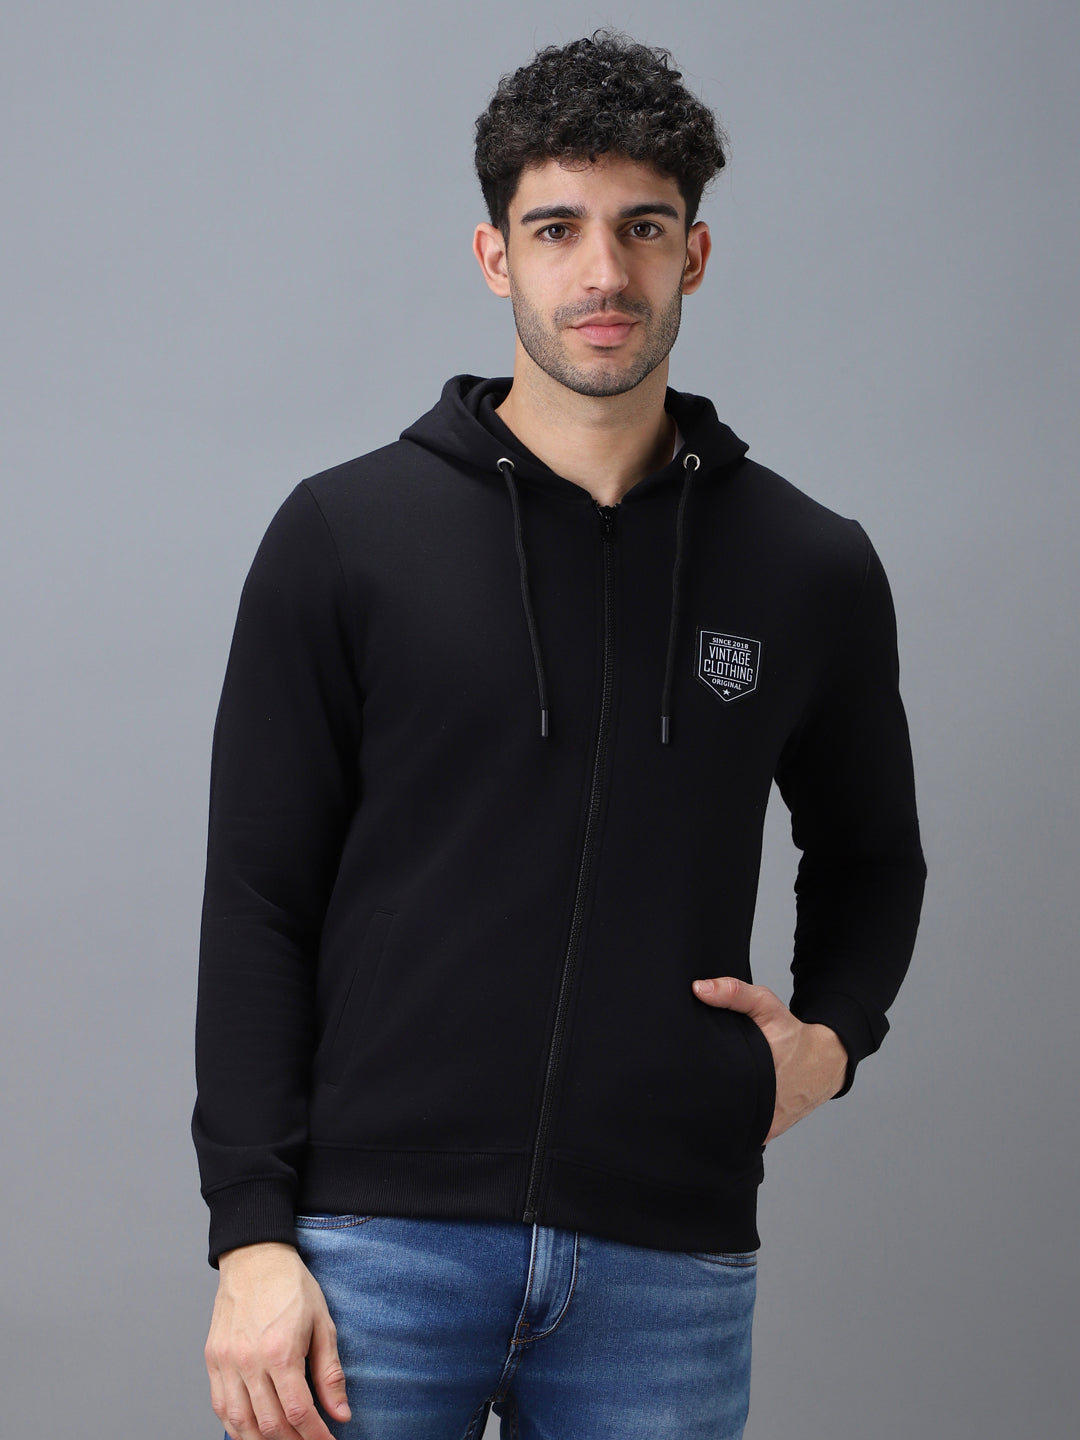 Men's Black Cotton Solid Zippered Hooded Neck Sweatshirt